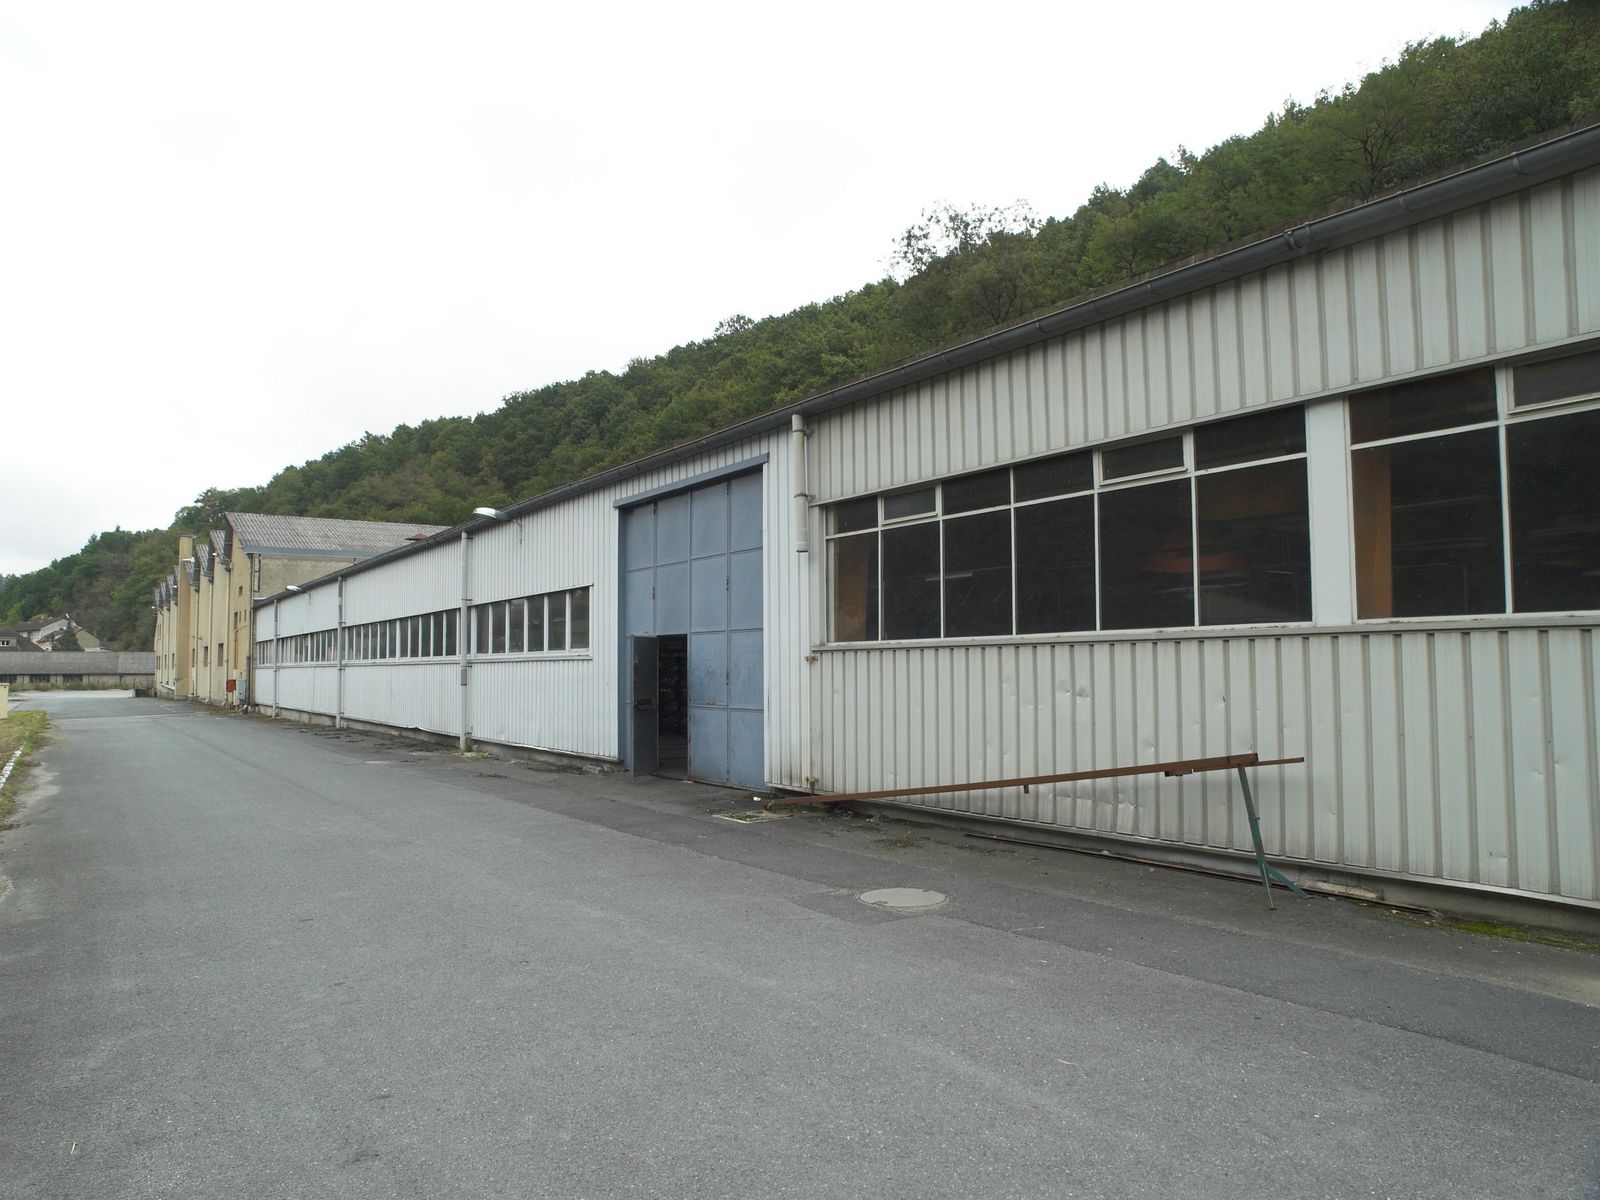 Vue générale de l'extension construite en 1989, au sud des sheds primitifs.